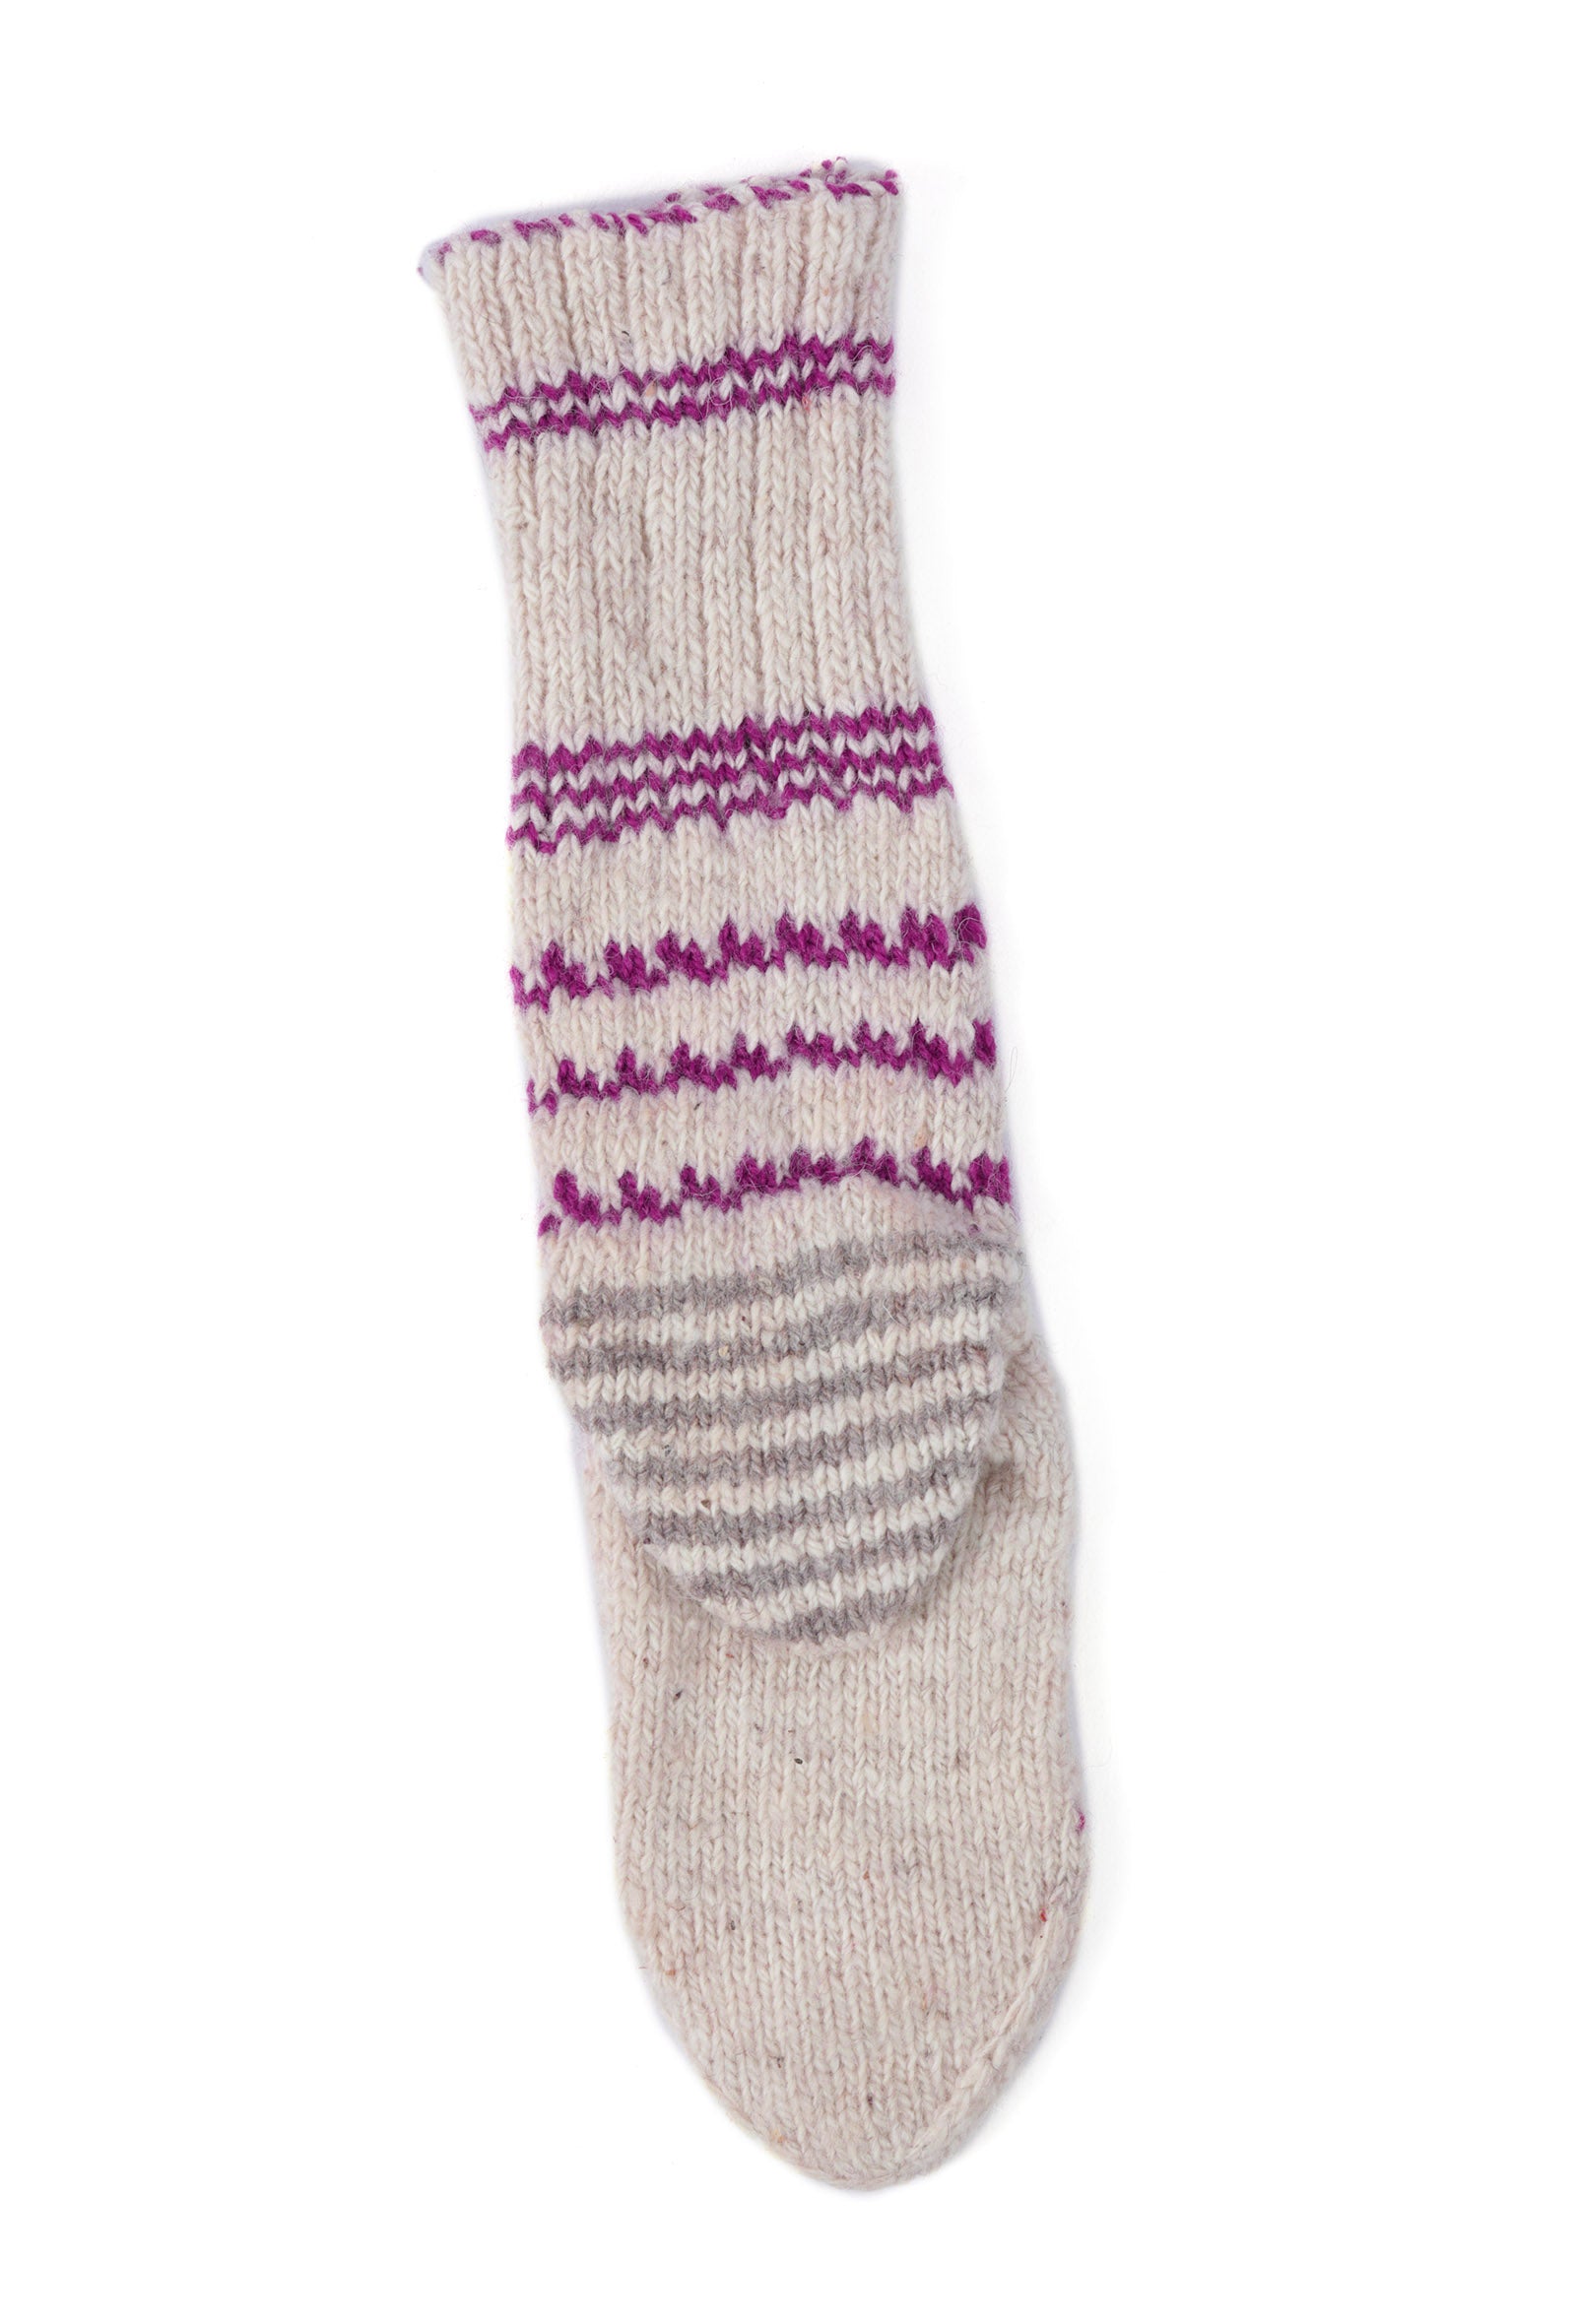 White & Multi Hand Knitted Woolen Winter Socks